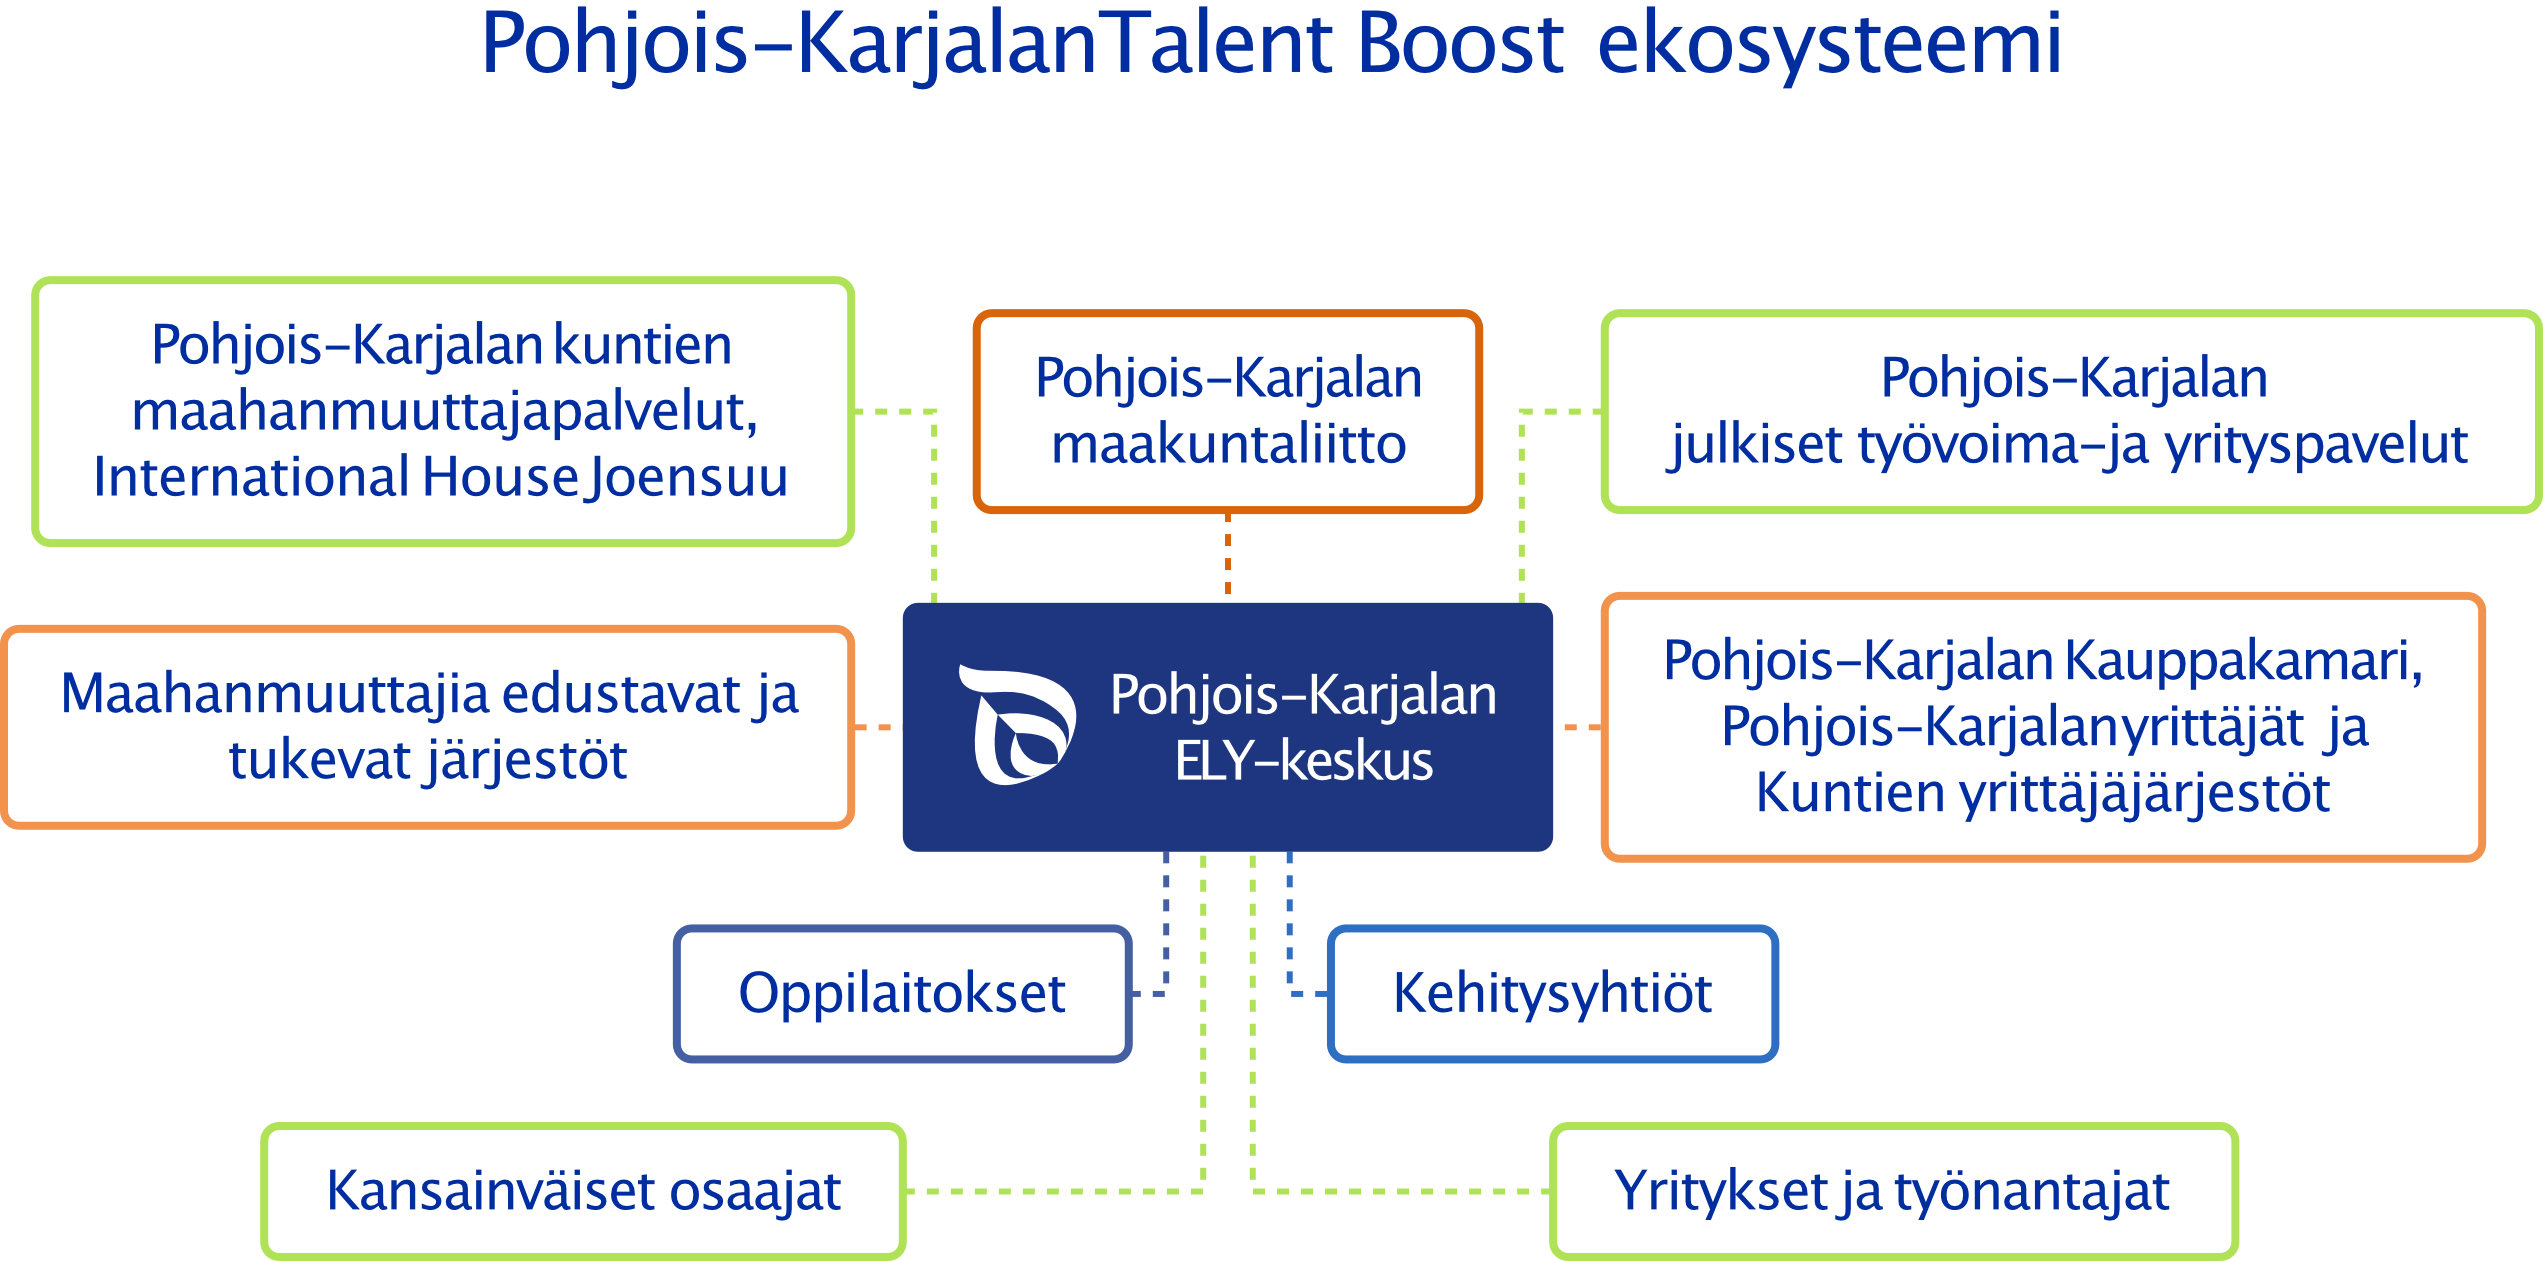 Kaavio kuvaa Pohjois-Karjalan Talent Boost ekosysteemin eri toimijat, sekä kyseisten toimijoiden väliset suhteet. 